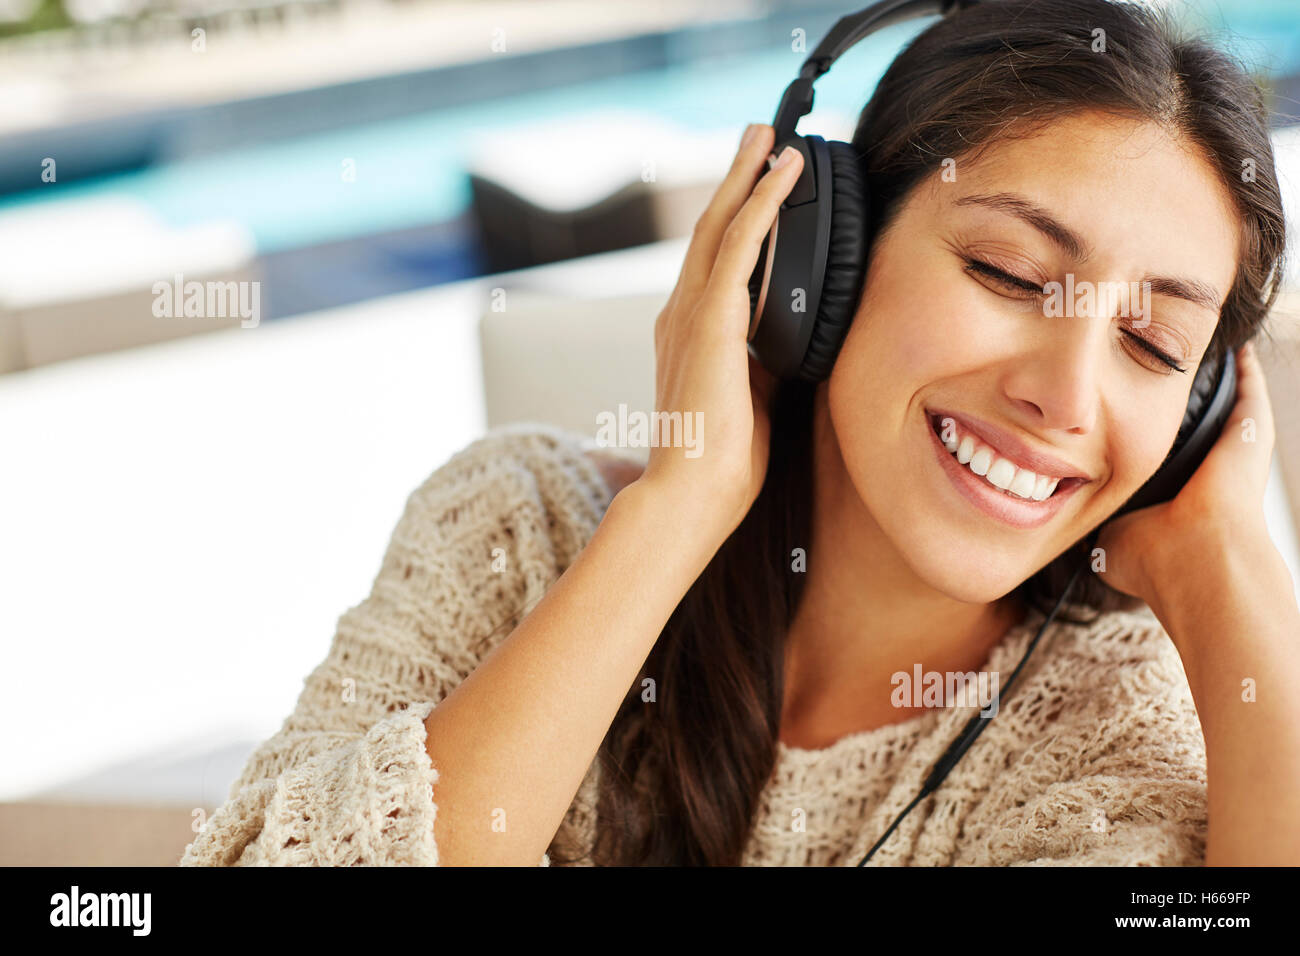 Smiling woman écouter de la musique avec un casque et les yeux fermés Banque D'Images